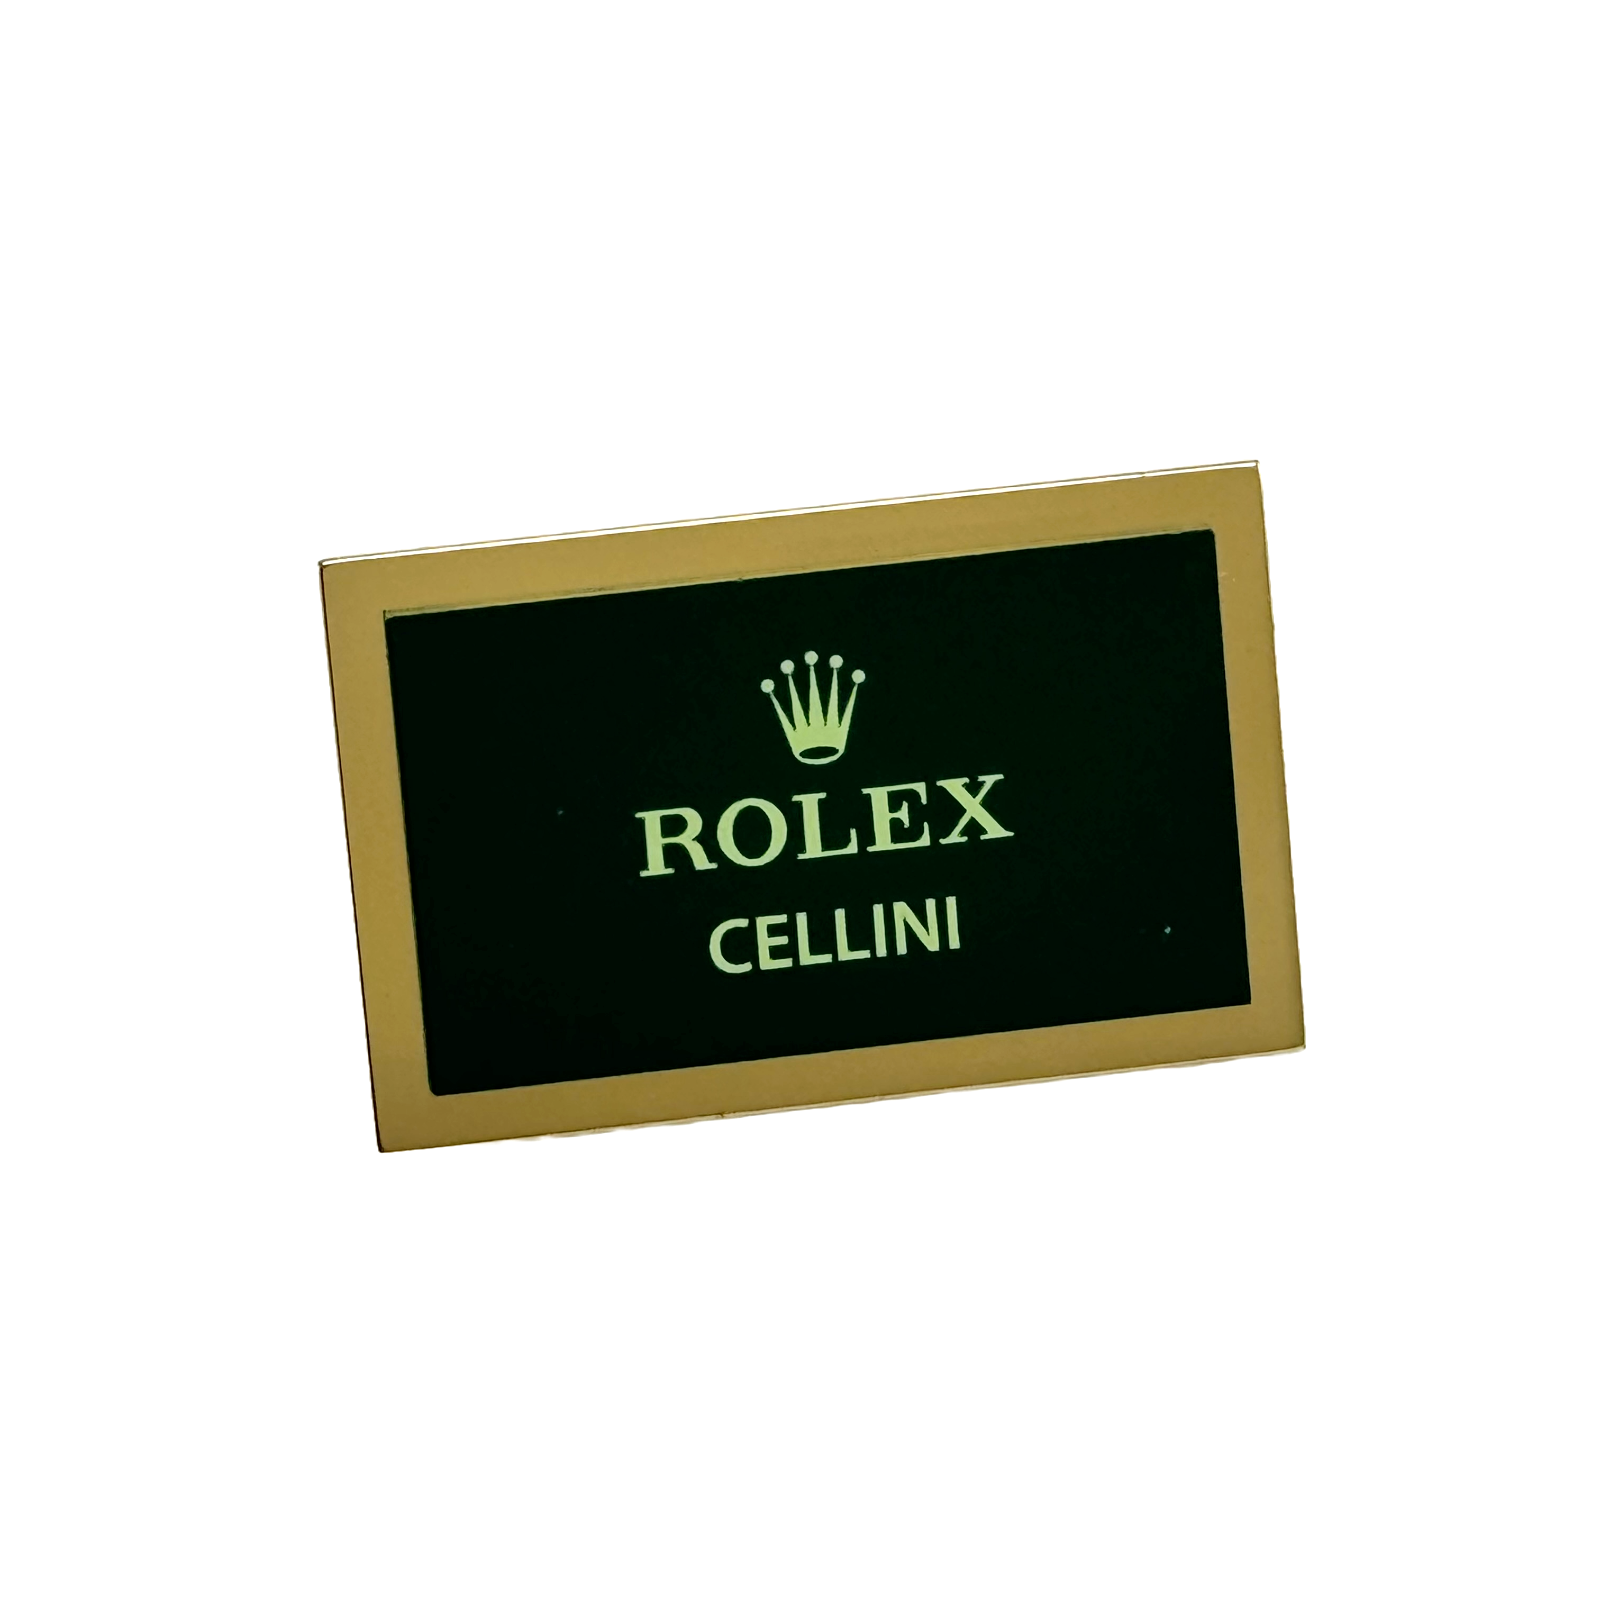 Rolex Cellini Display Aufsteller Schild Konzessionär standee sign